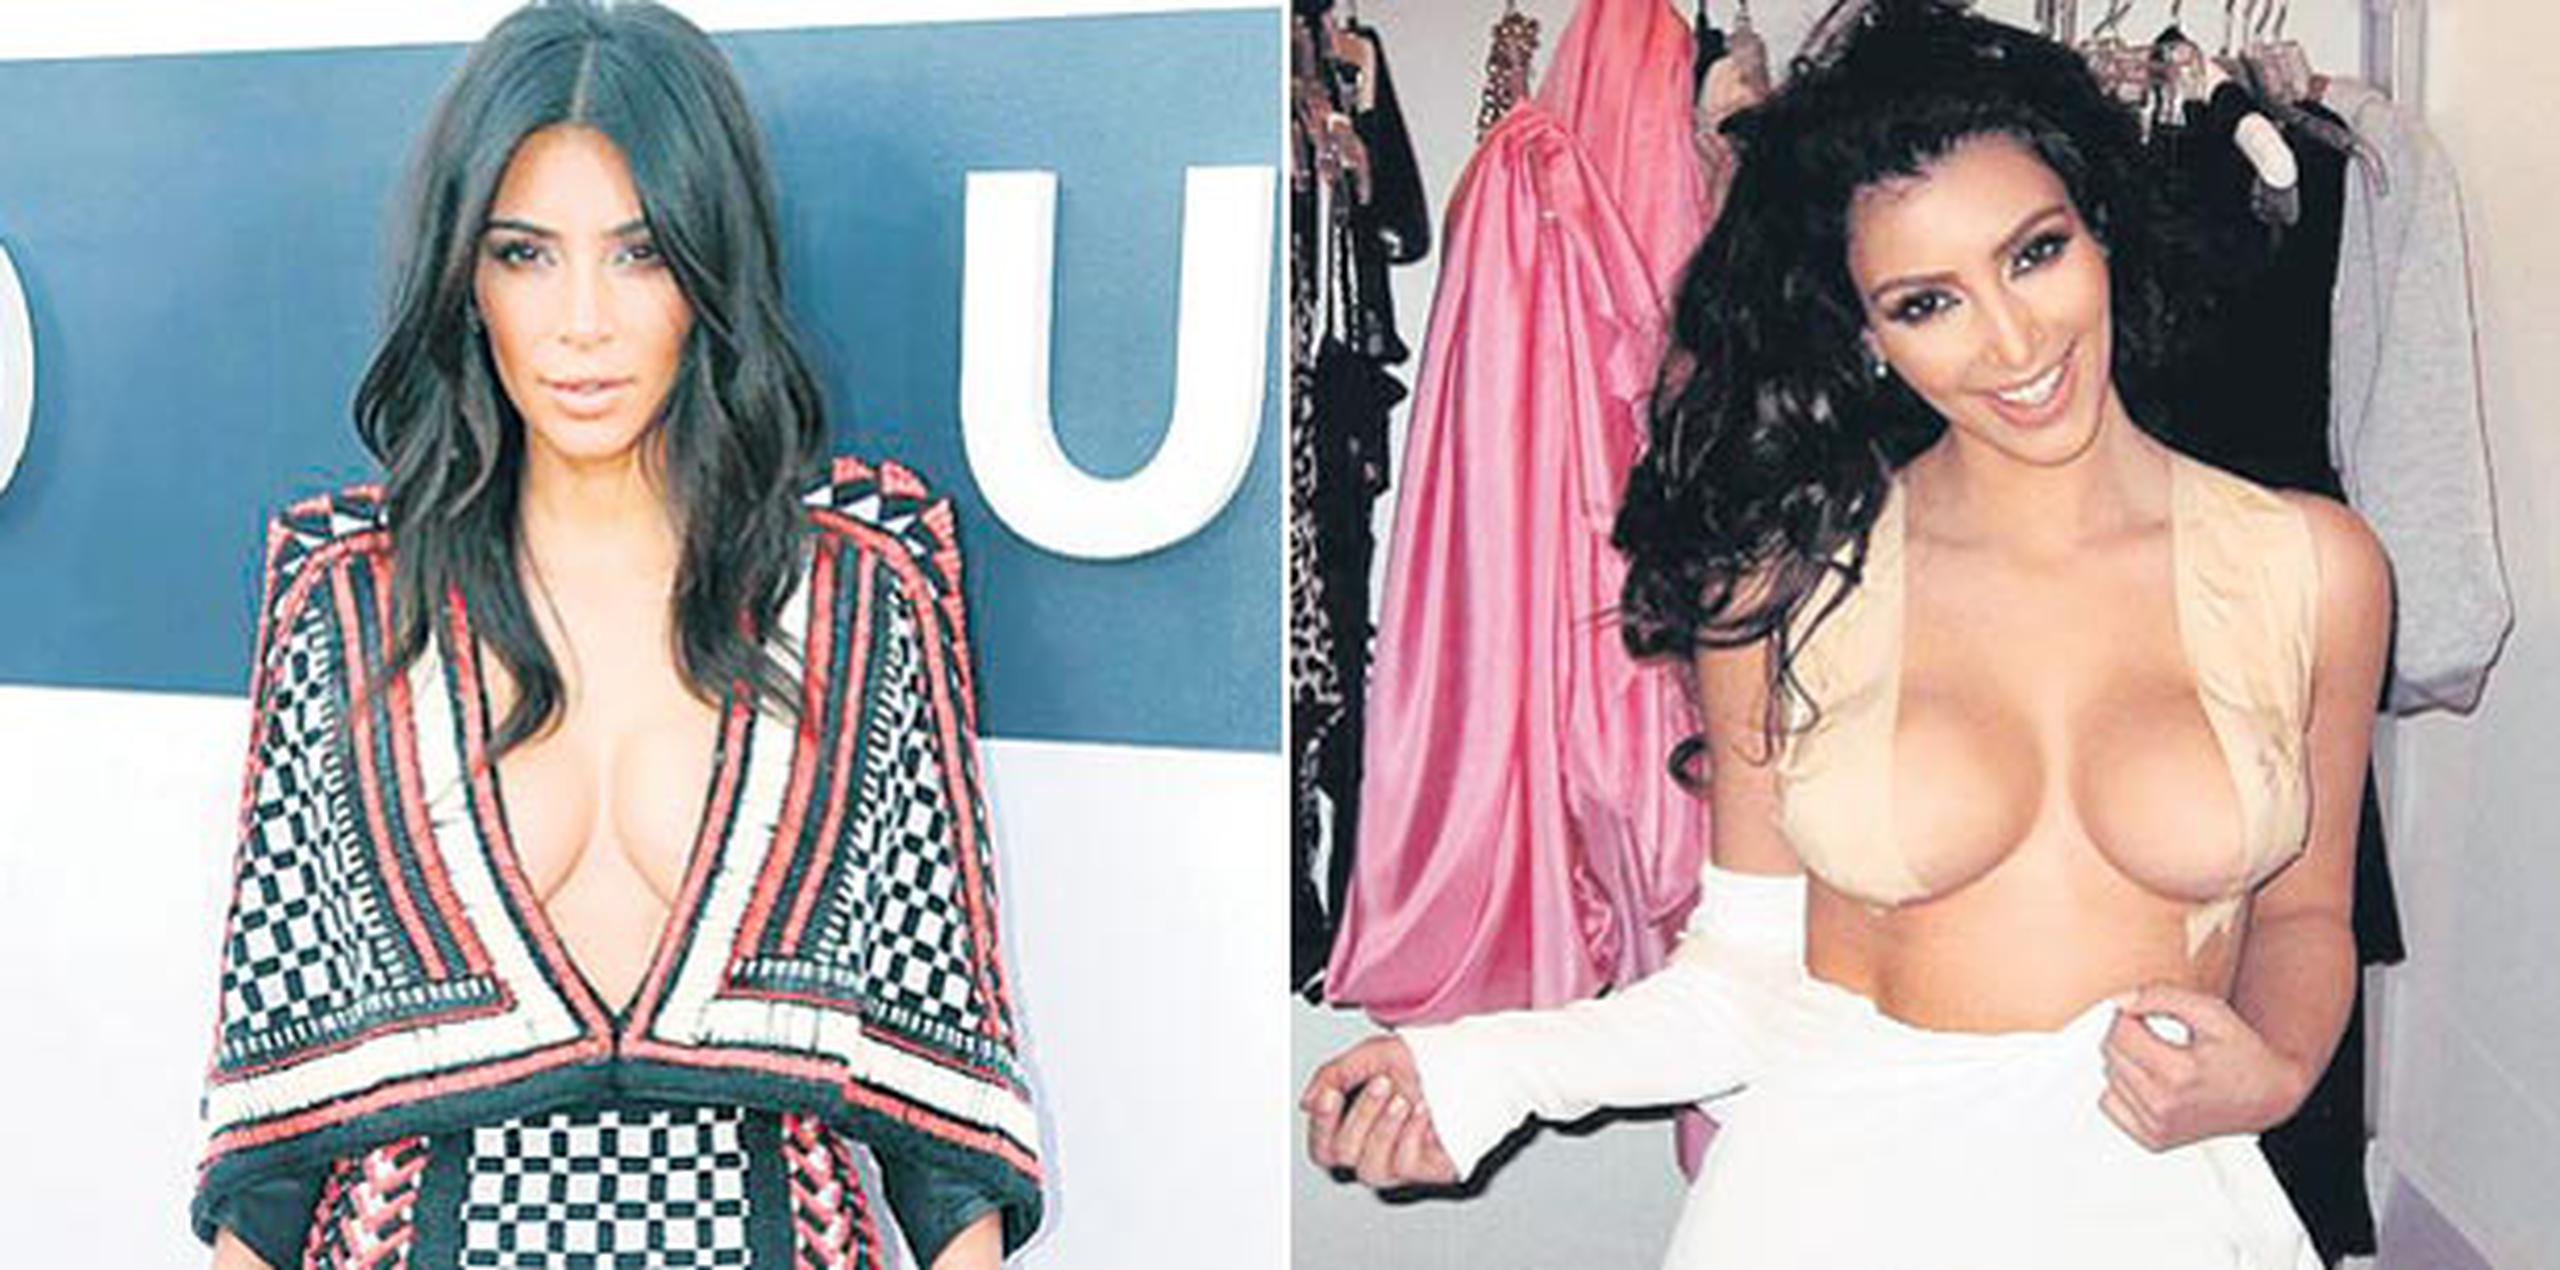 La semana pasada Kim Kardashian reveló una de sus estrategias para mostrar unos pechos erguidos y grandes en eventos glamorosos. (Archivo/Instagram)